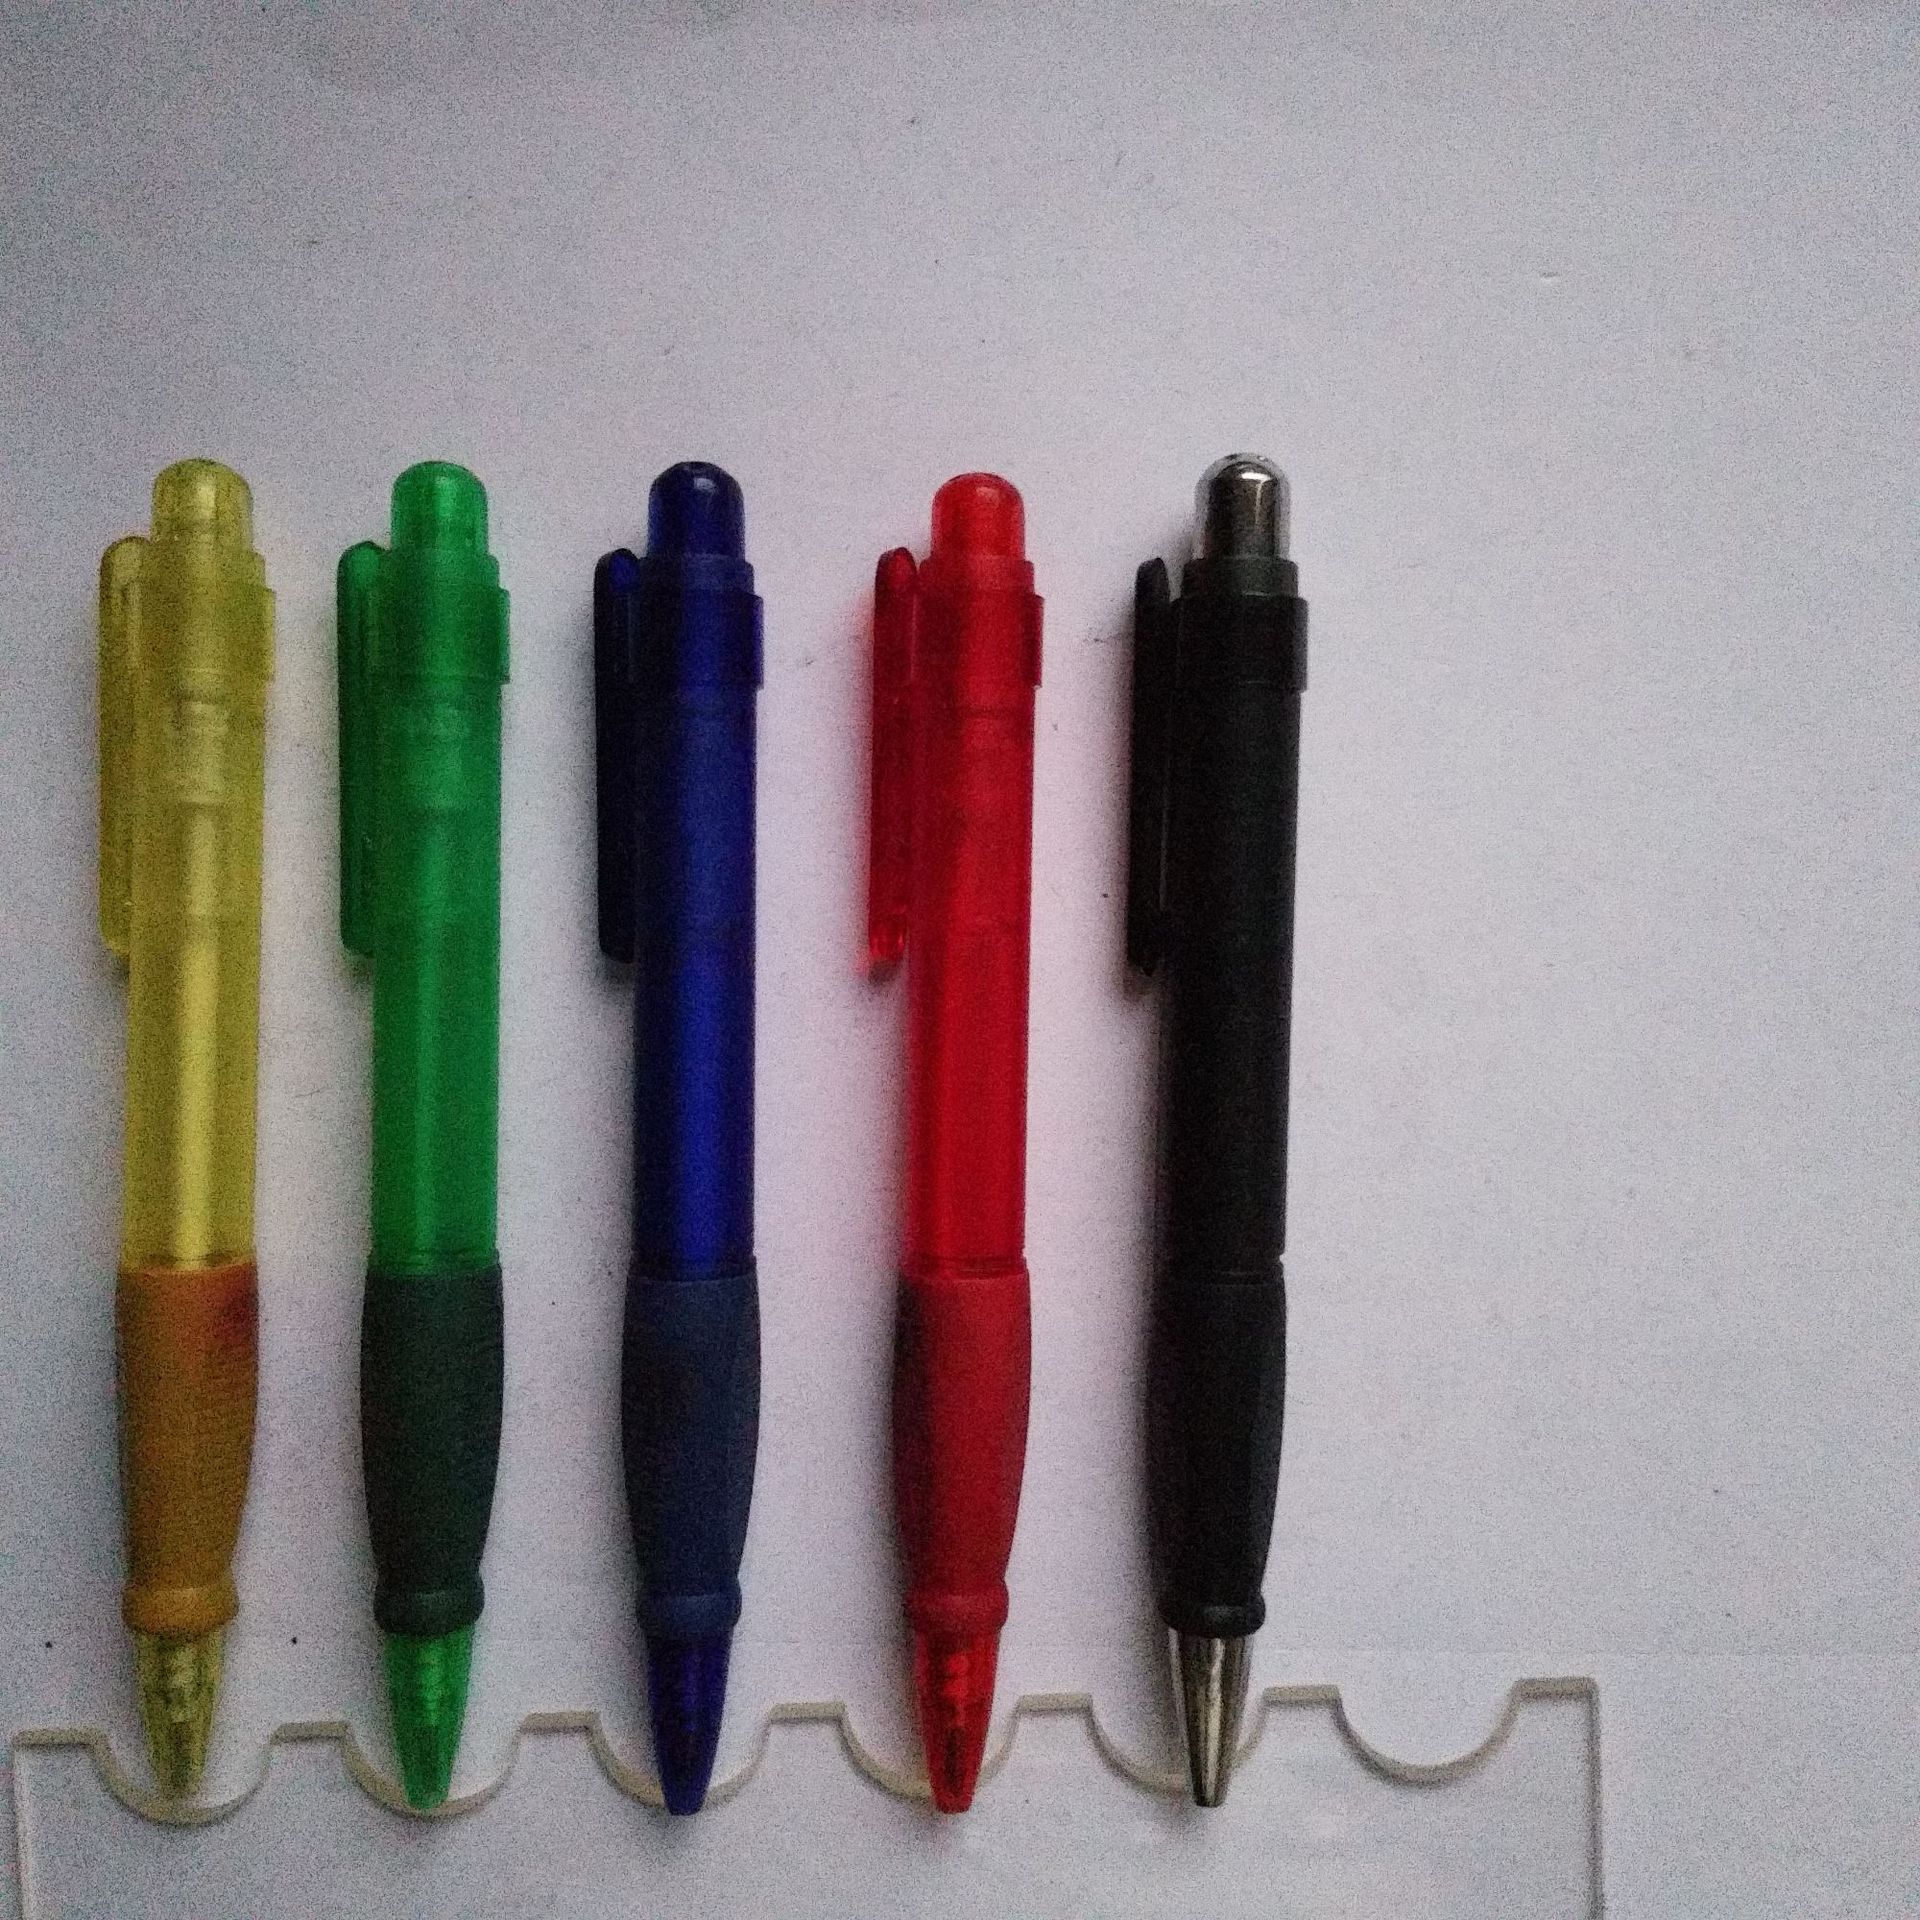 桐庐明浩制笔厂专业供应塑料按动圆珠笔  广告塑料圆珠笔示例图1